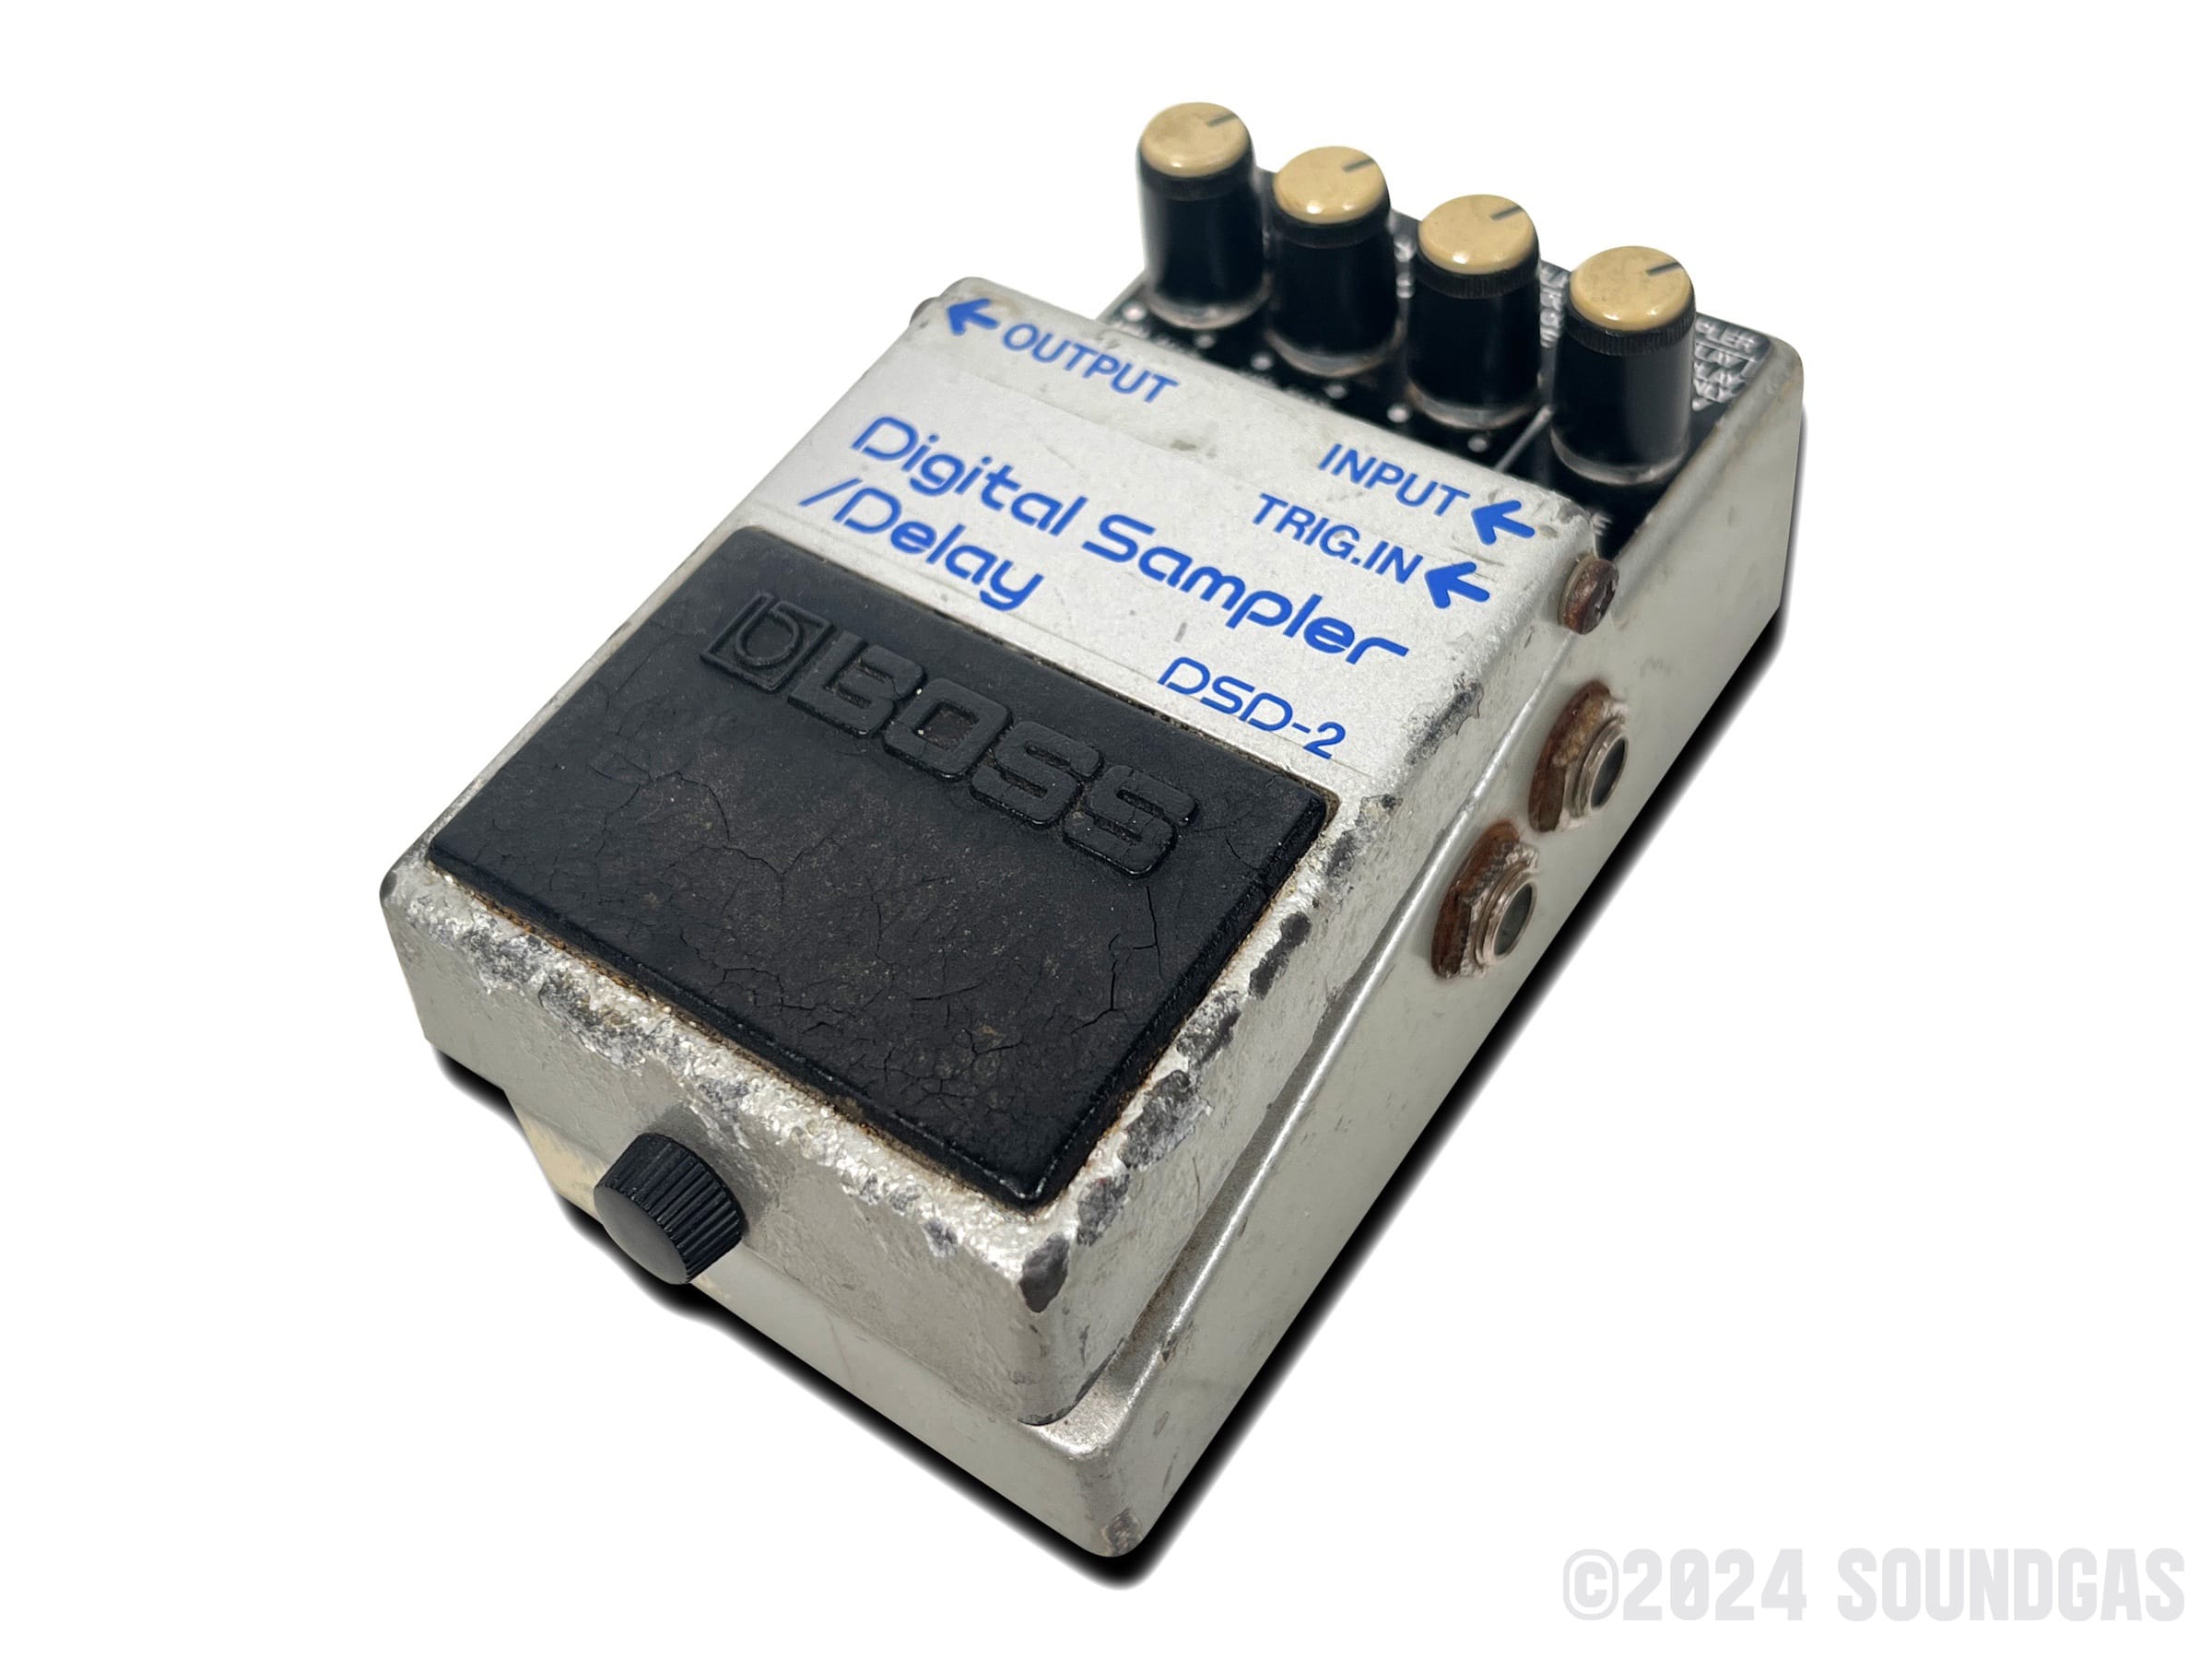 Boss DSD-2 Digital Sampler / Delay – Soundgas